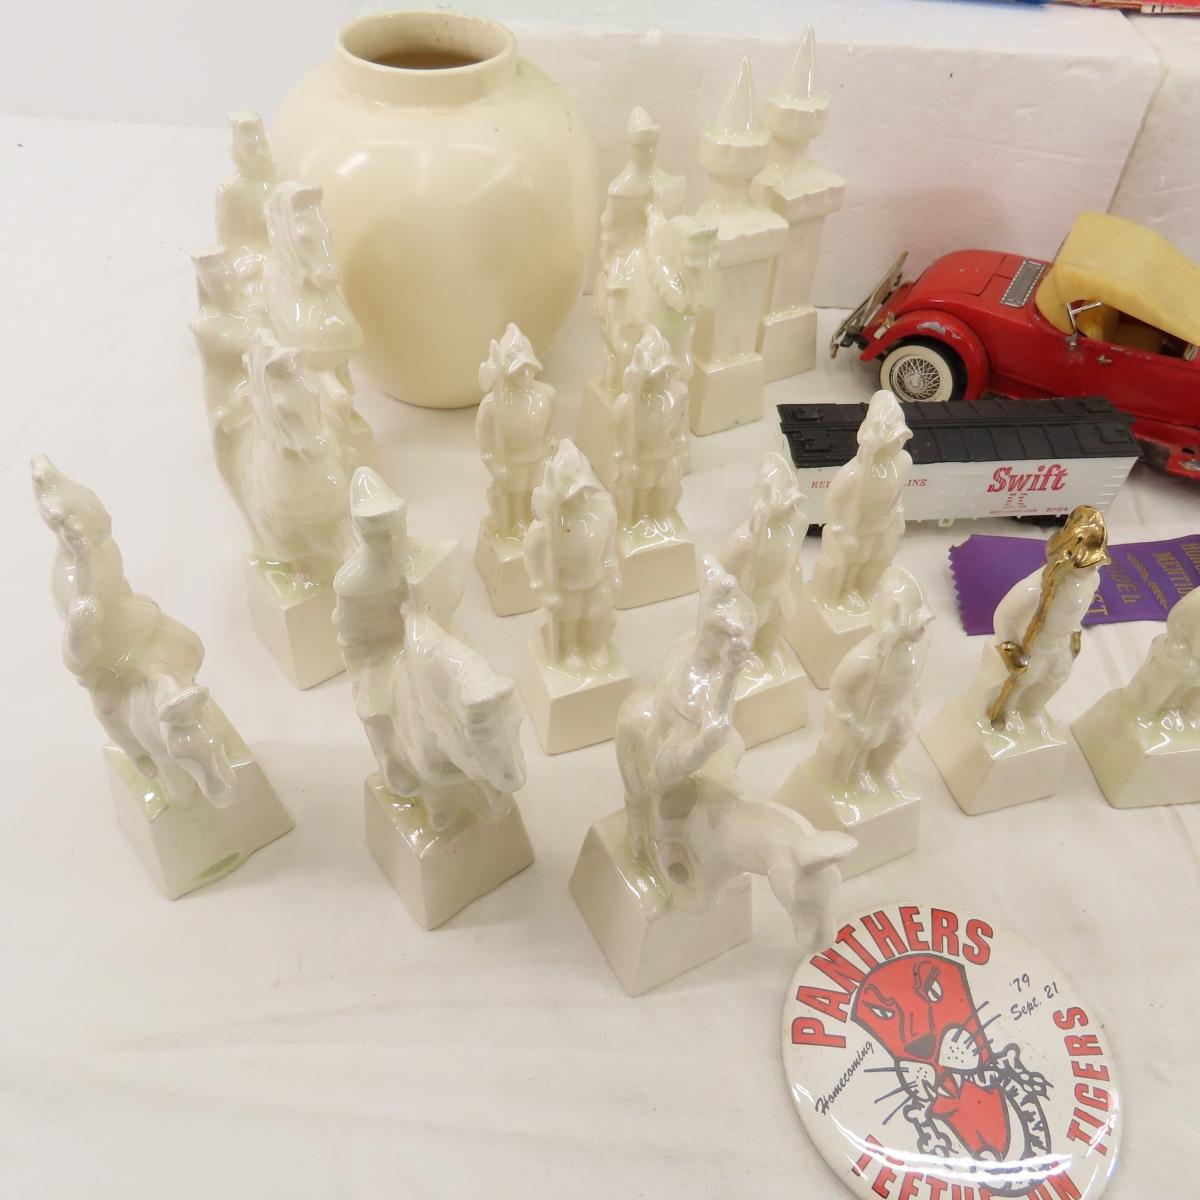 Ceramic Chess Pieces, Model Car & More